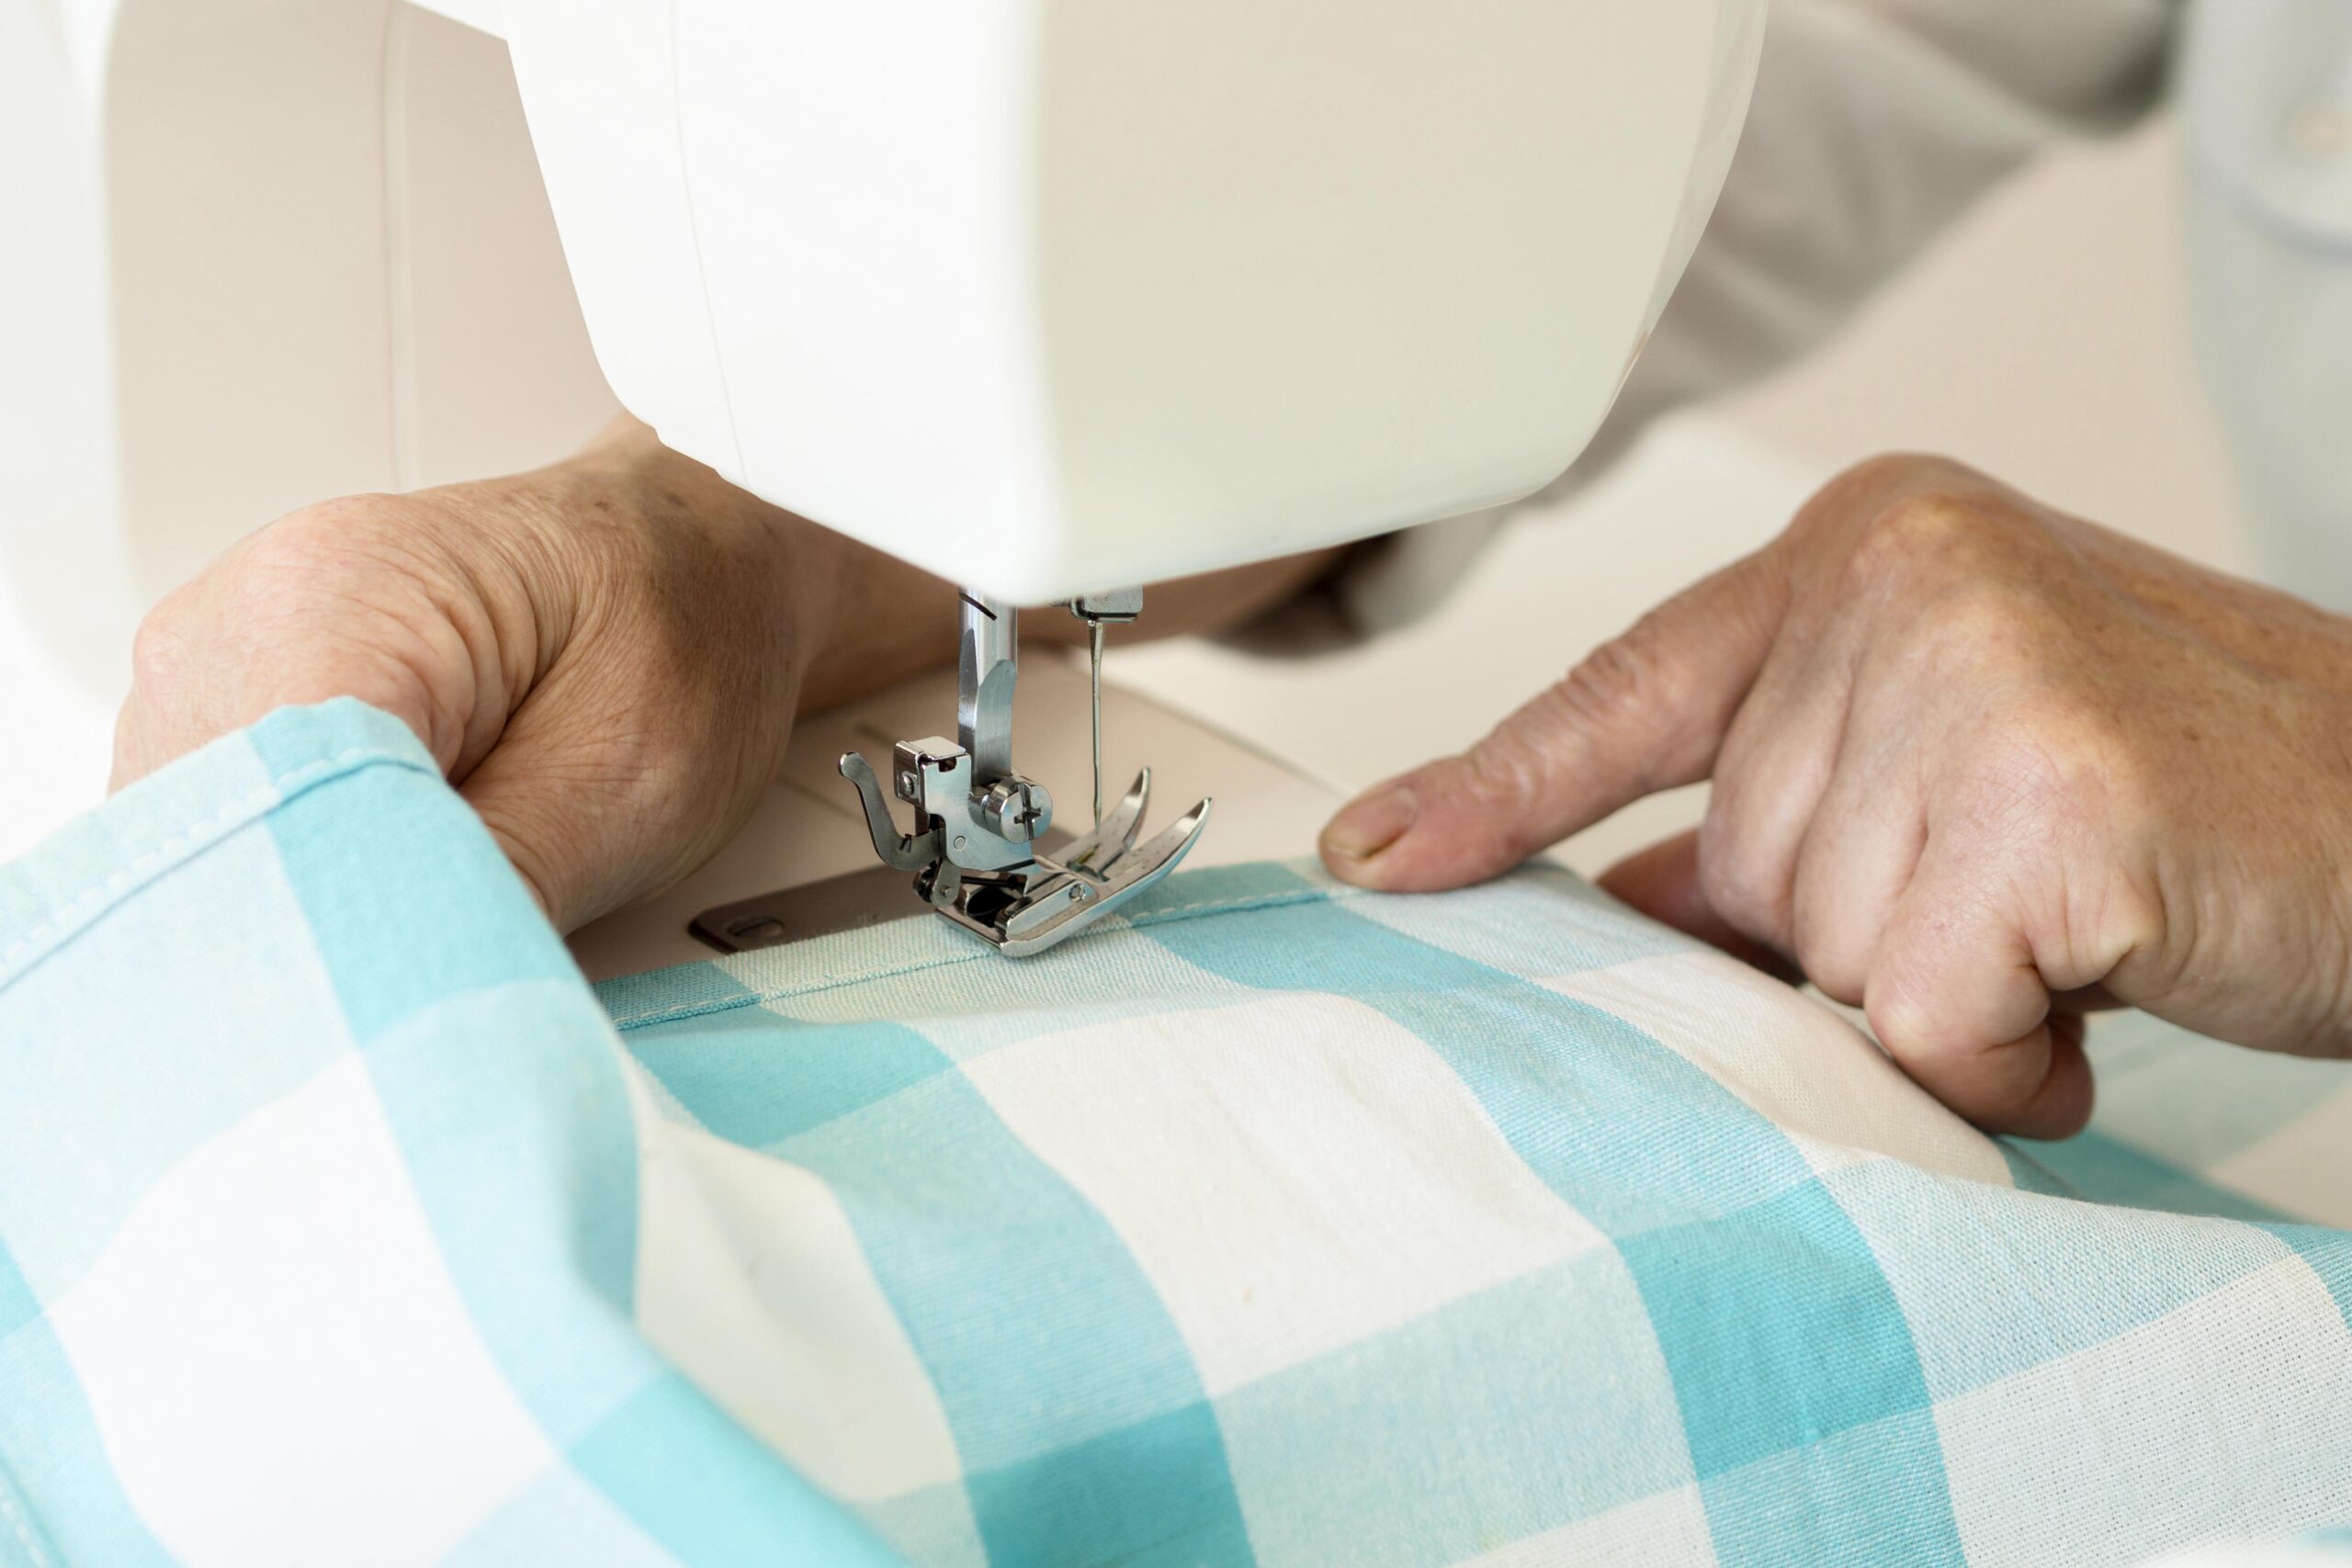 alto angulo persona maquina coser textil scaled